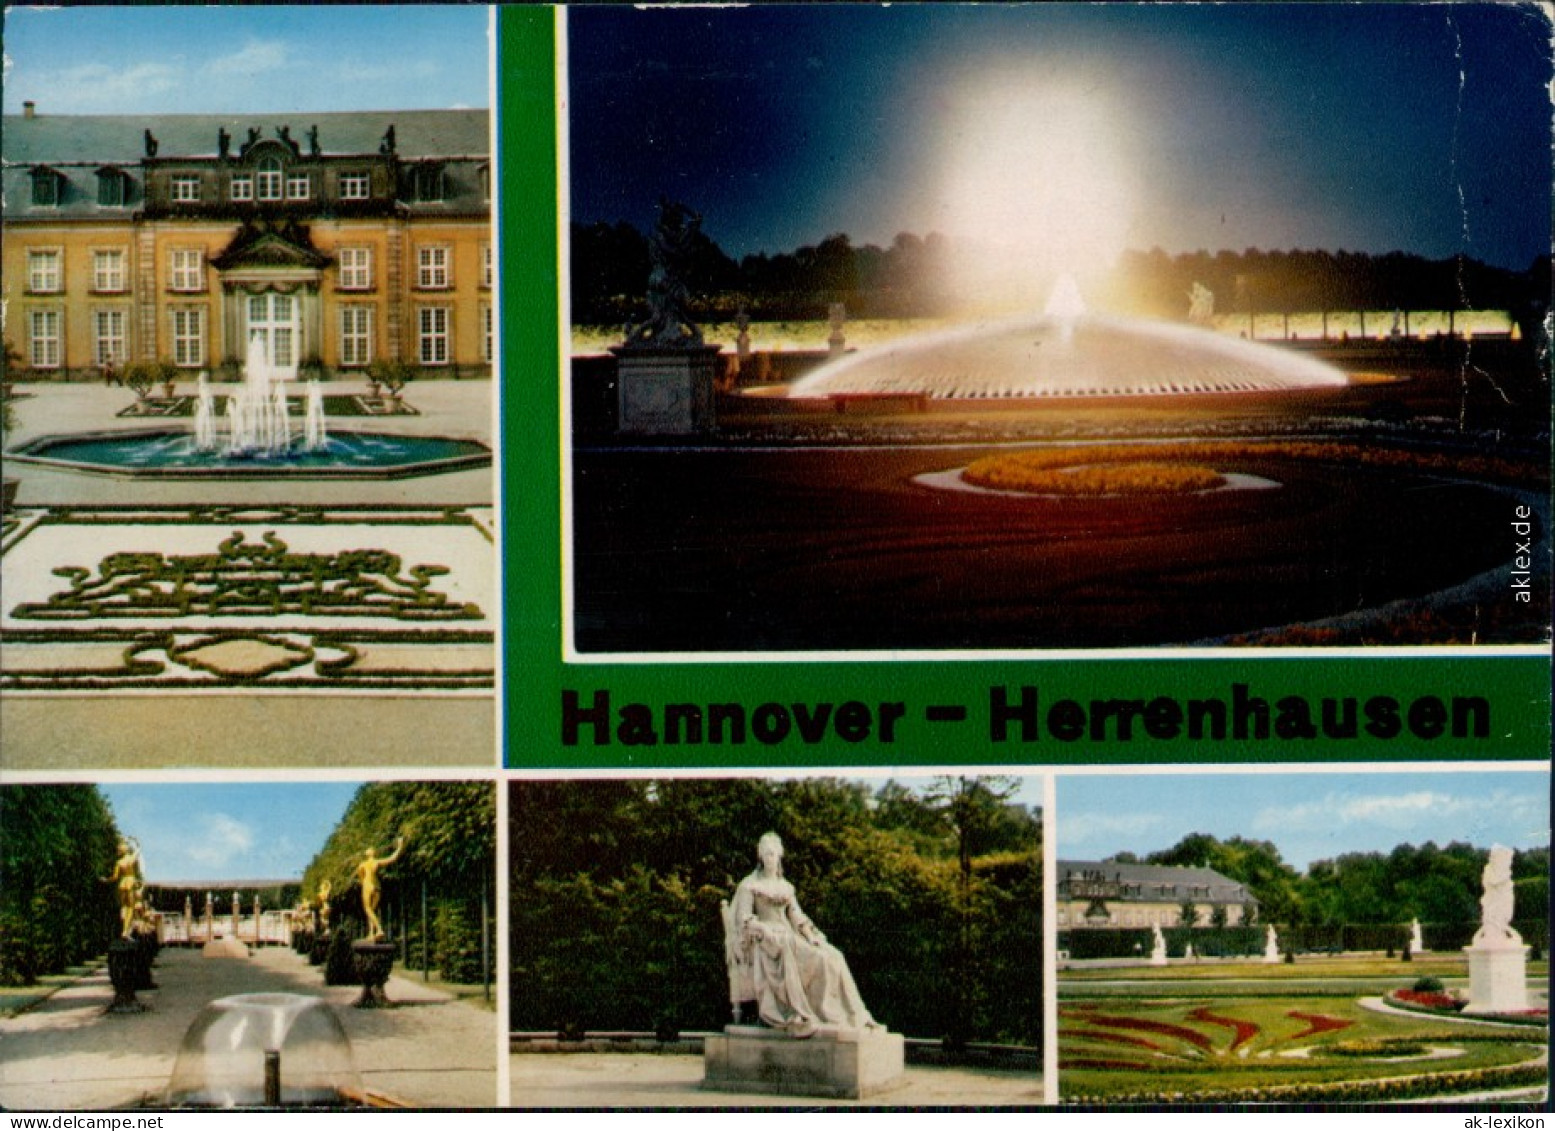 Herrenhausen-Hannover Großer Garten - Galerie,  1977 - Hannover